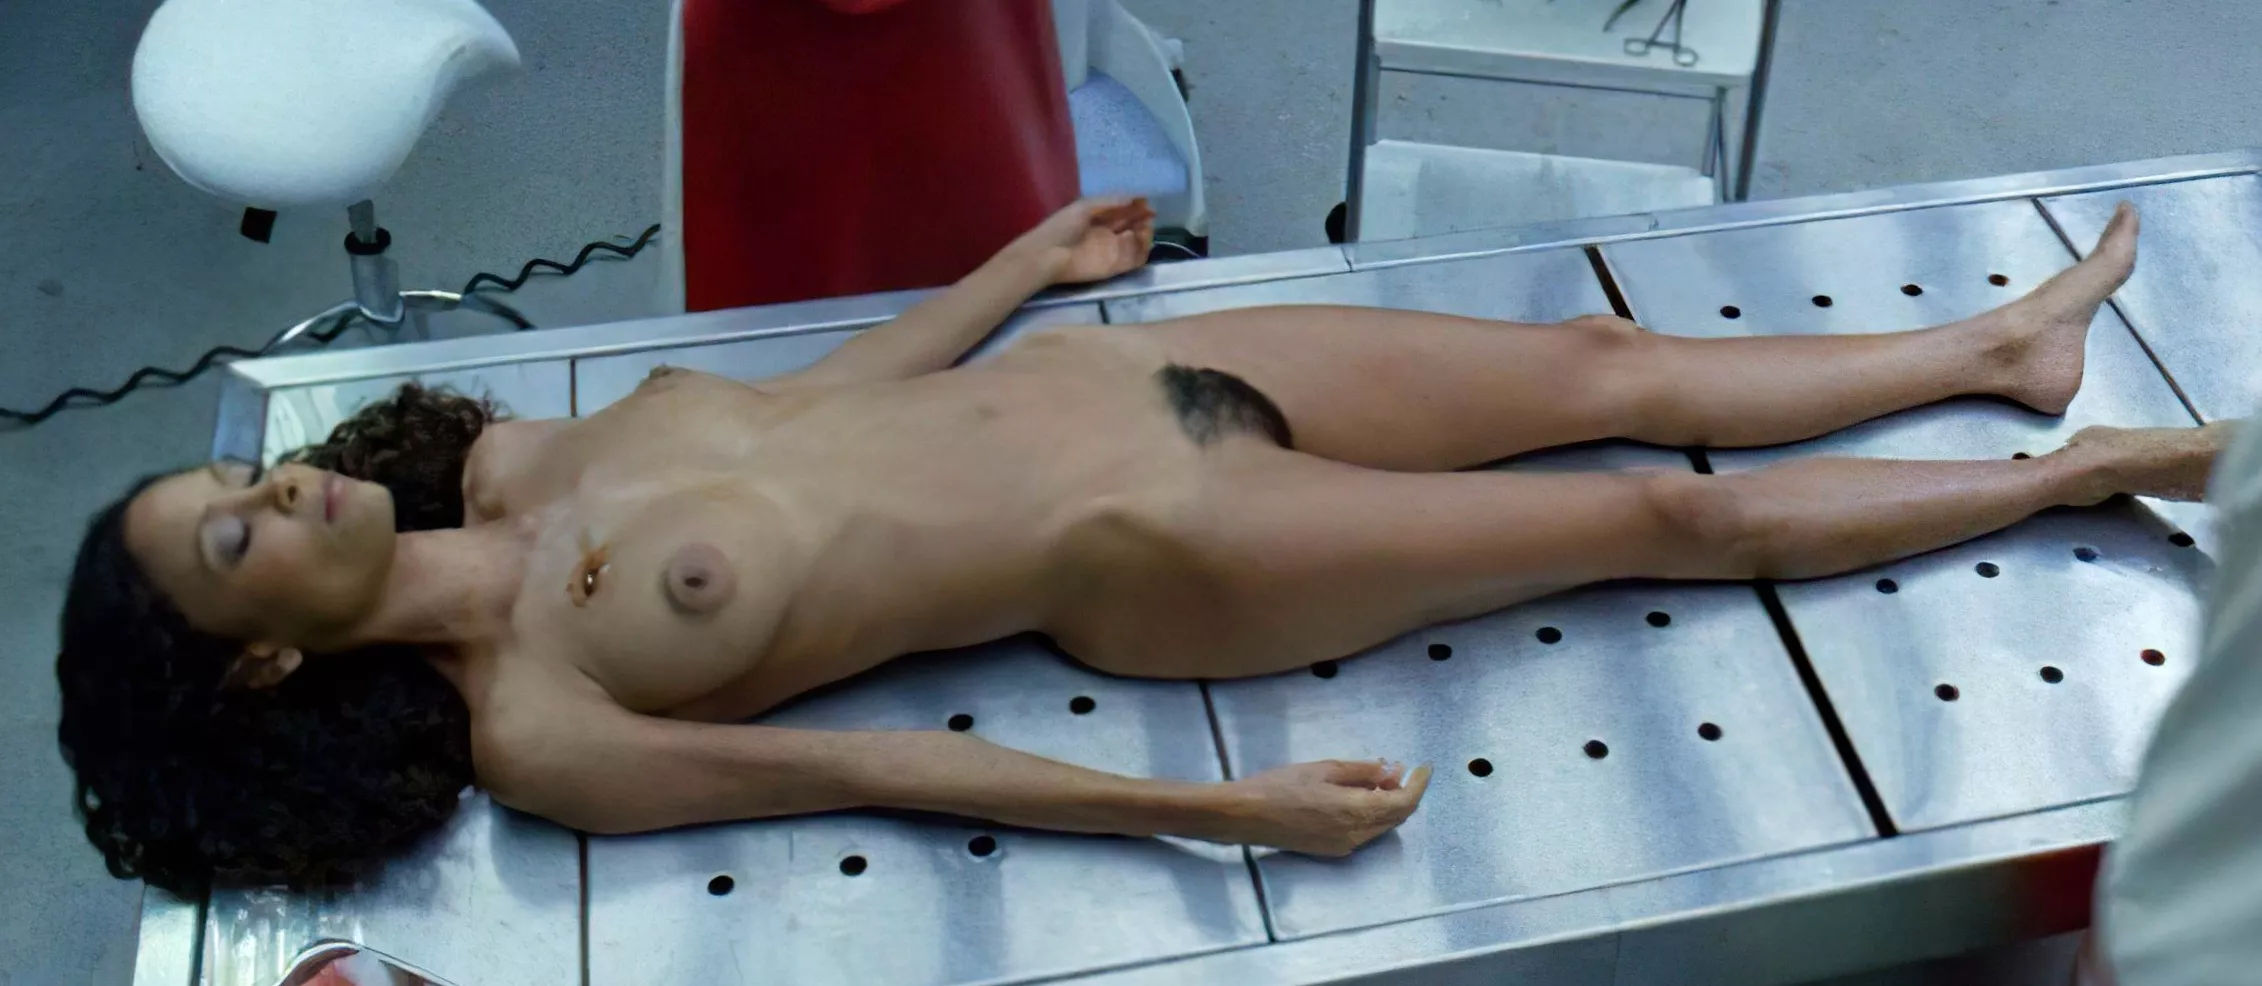 Thandie Newton in "Westworld" nudes.